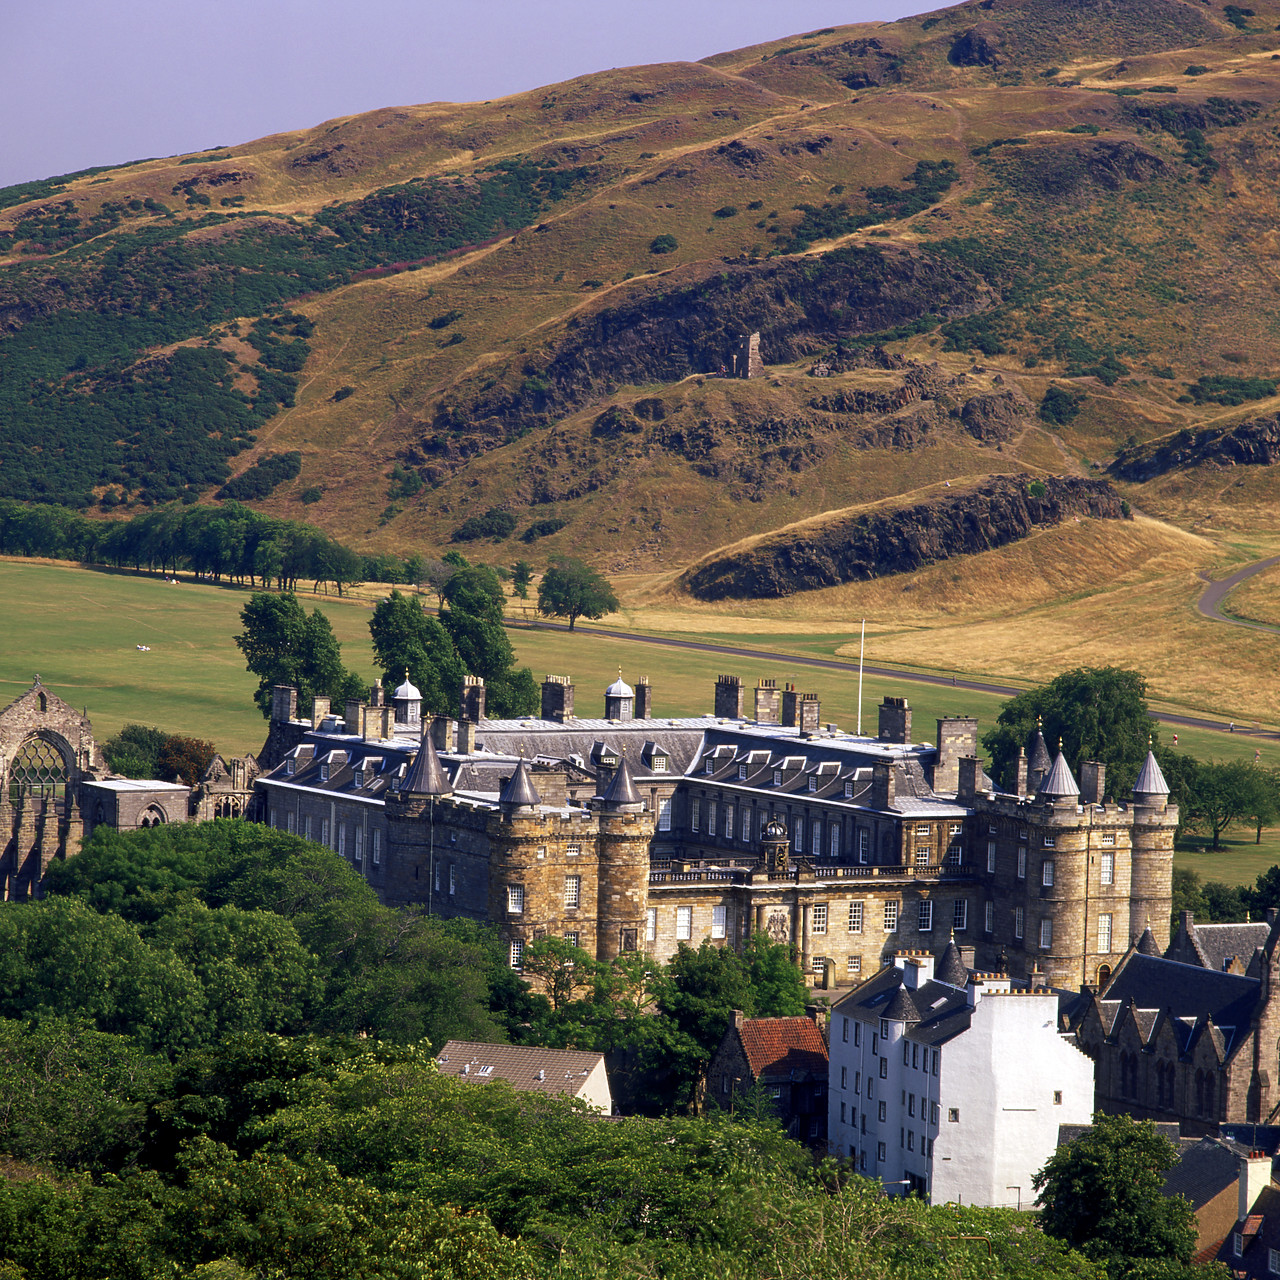 #955659-1 - Palace of Holyroodhouse, Edinburgh, Lothian Region, Scotland